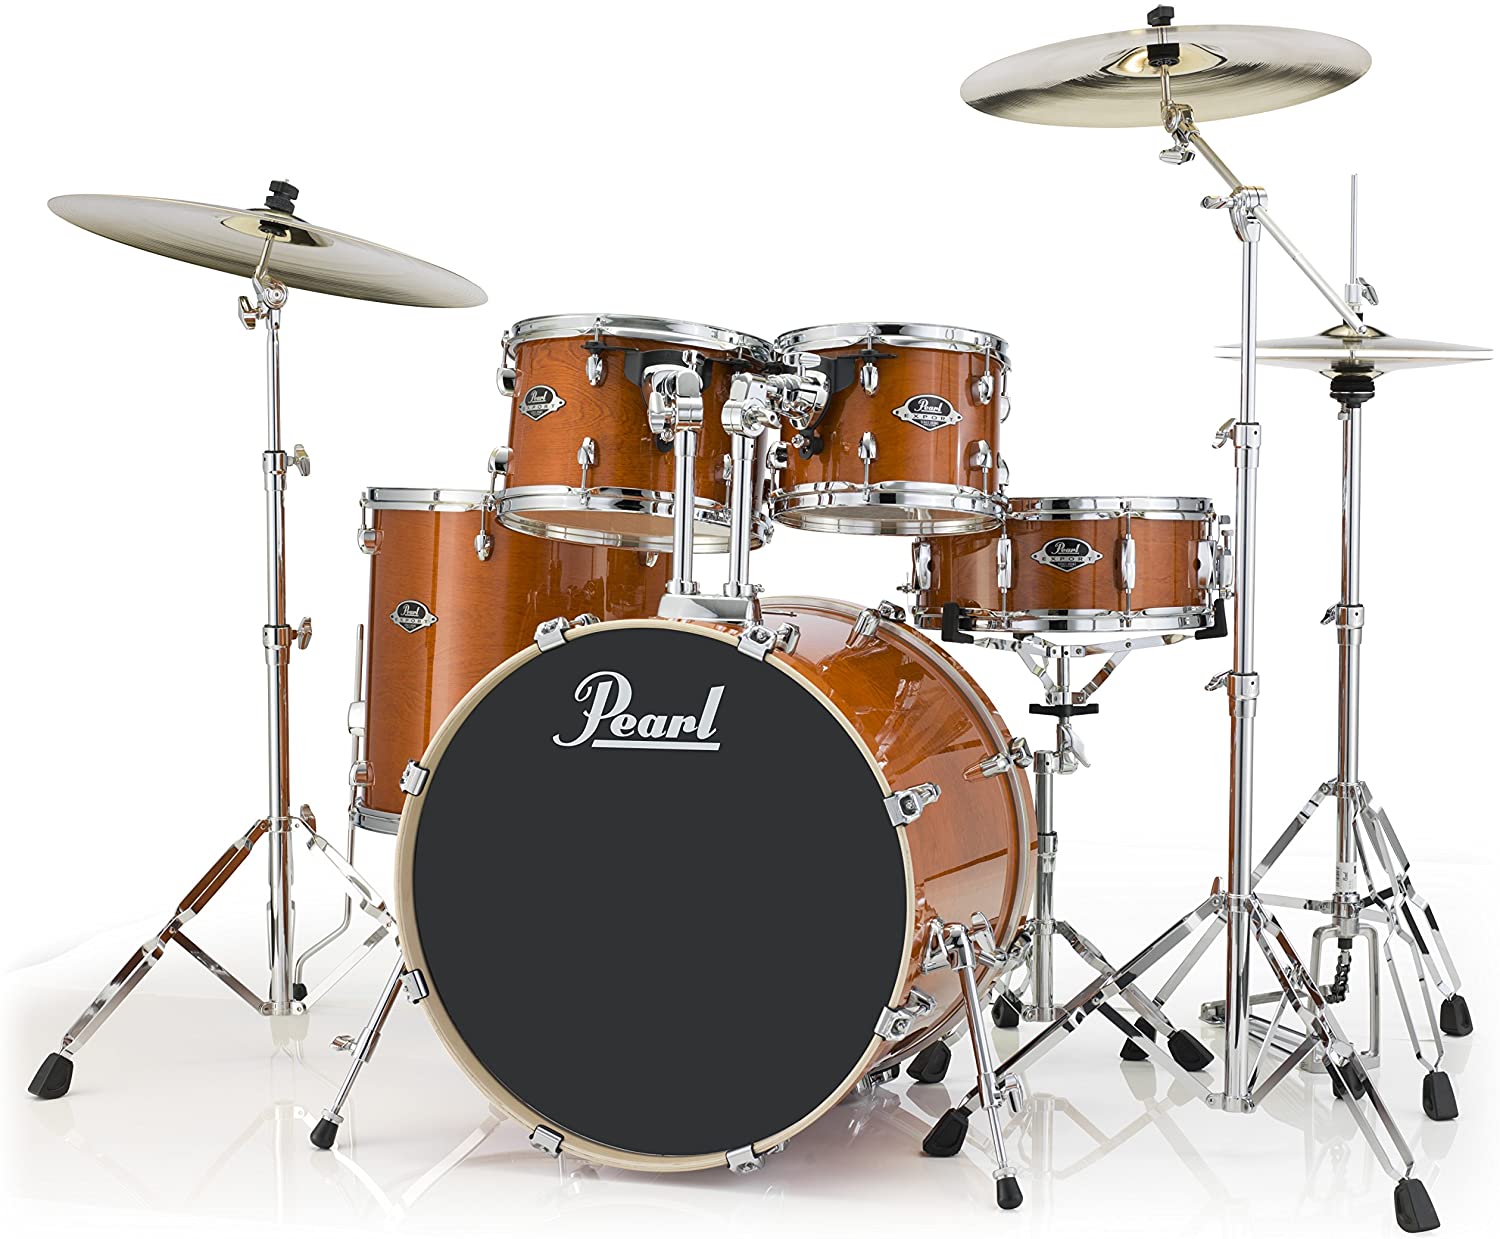 Pearl Export Drum Set review